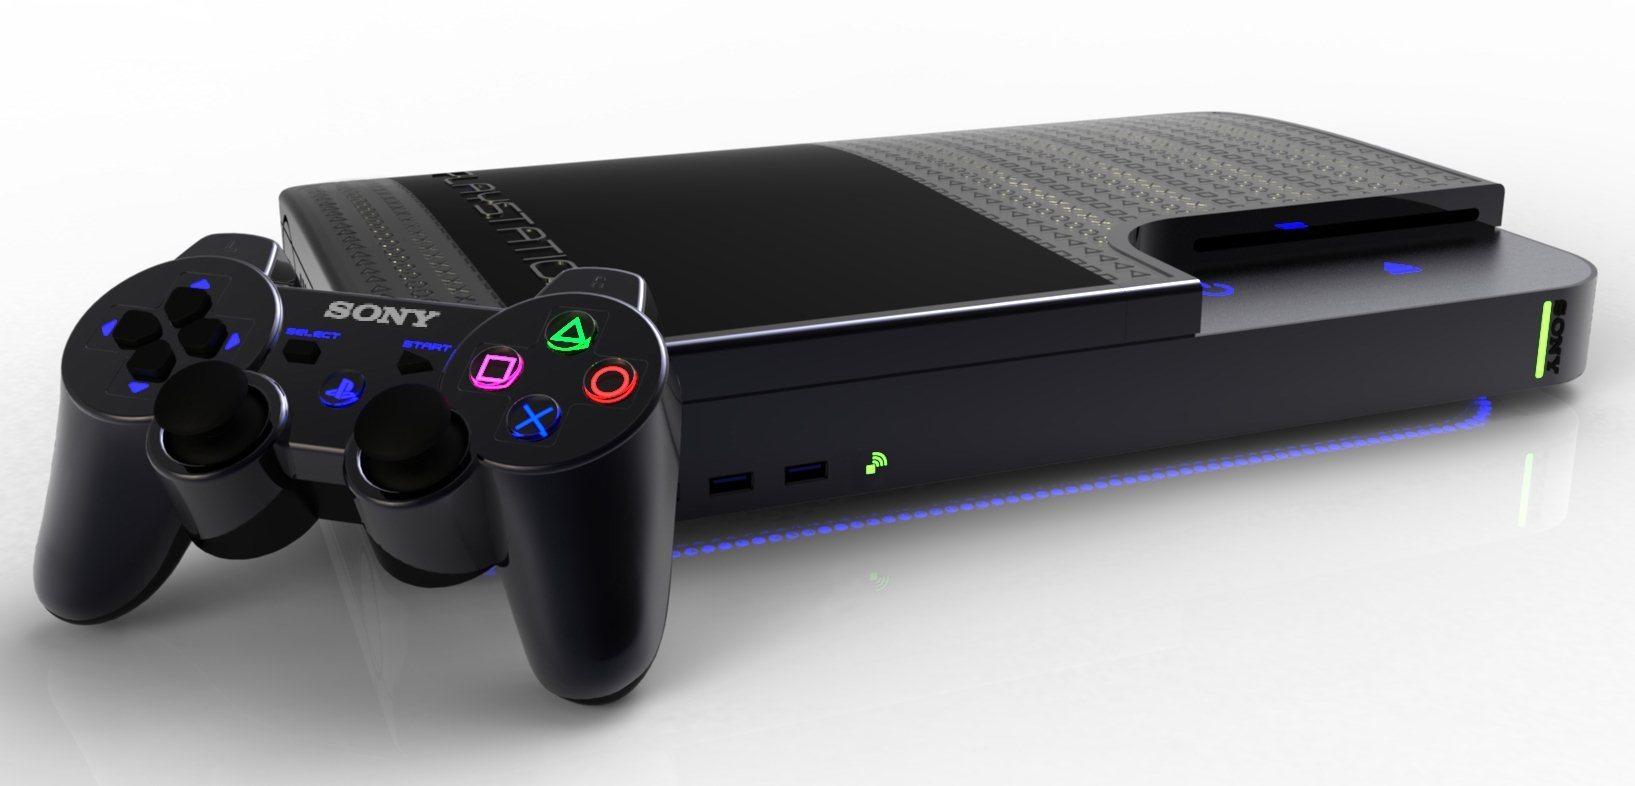 PlayStation 4, aún no ha salido al mercado y solo hay criticas sobre la nueva consola de Sony